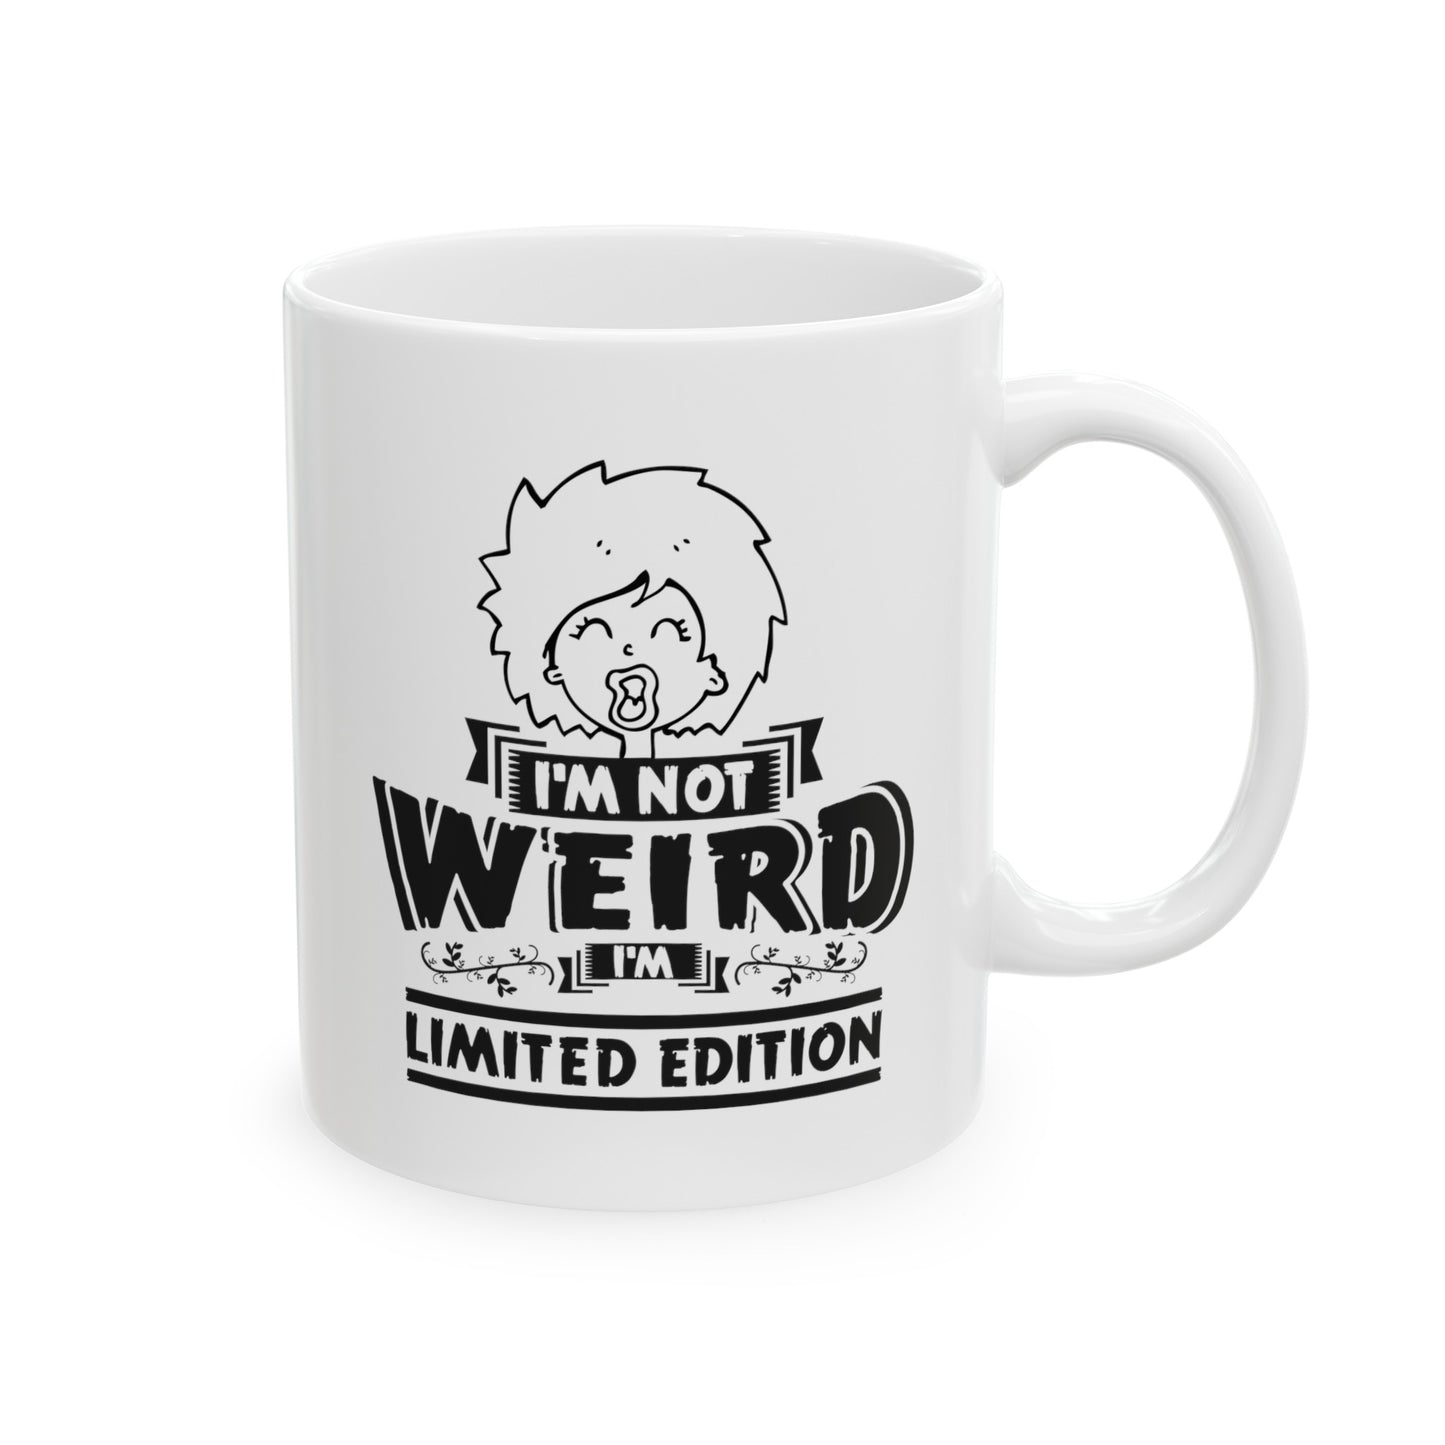 Mug - I'm not weird